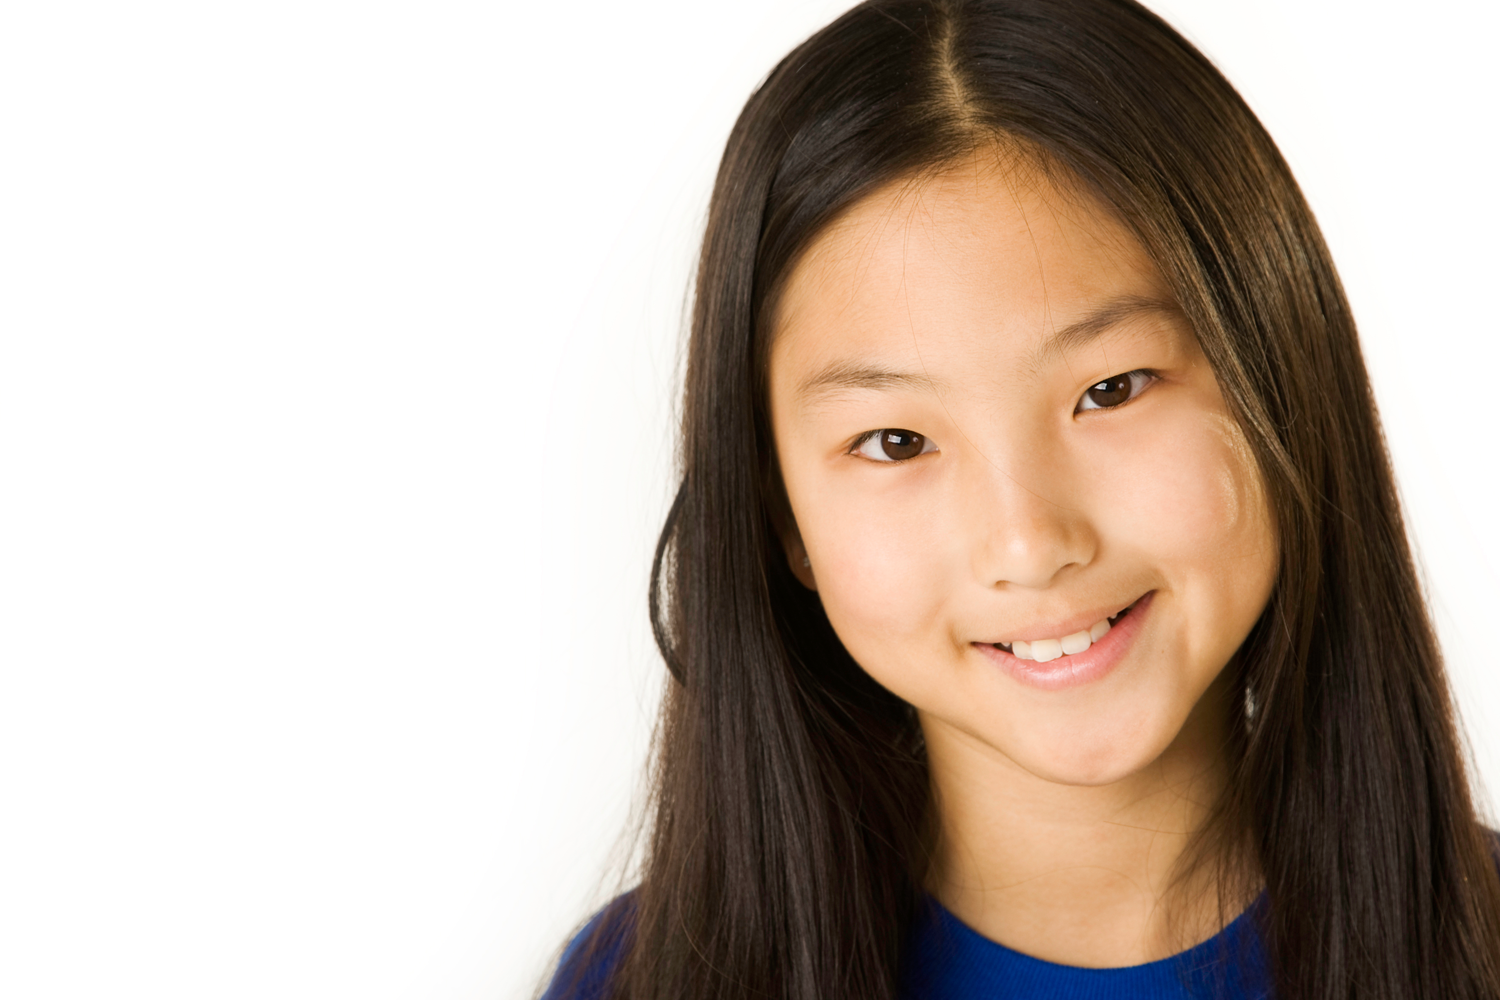 Little asia. Азиатка улыбается. Курсы для детей азиаты. Улыбка азиатской девушки. Веселое лицо девочки азиатки.